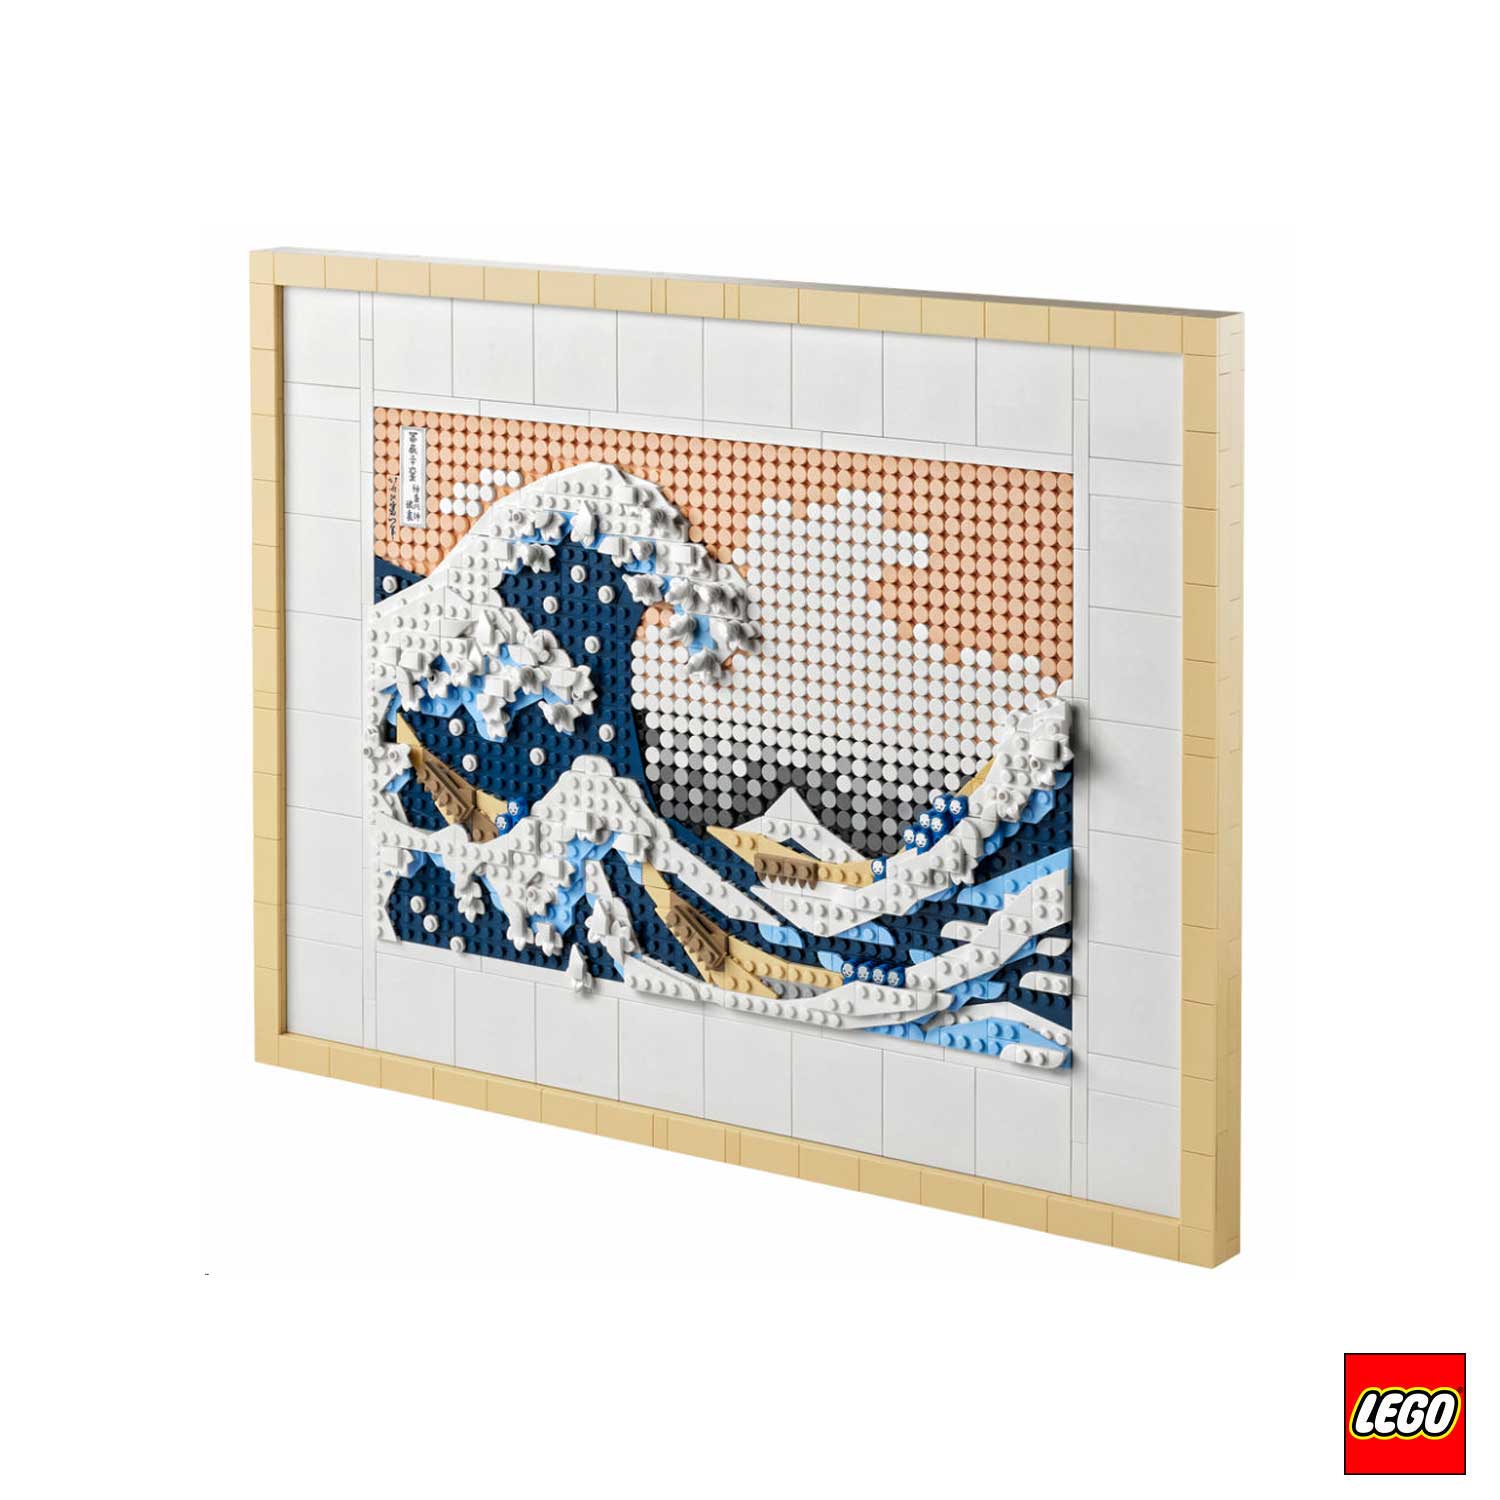 Riprodurre le opere d'arte con i LEGO